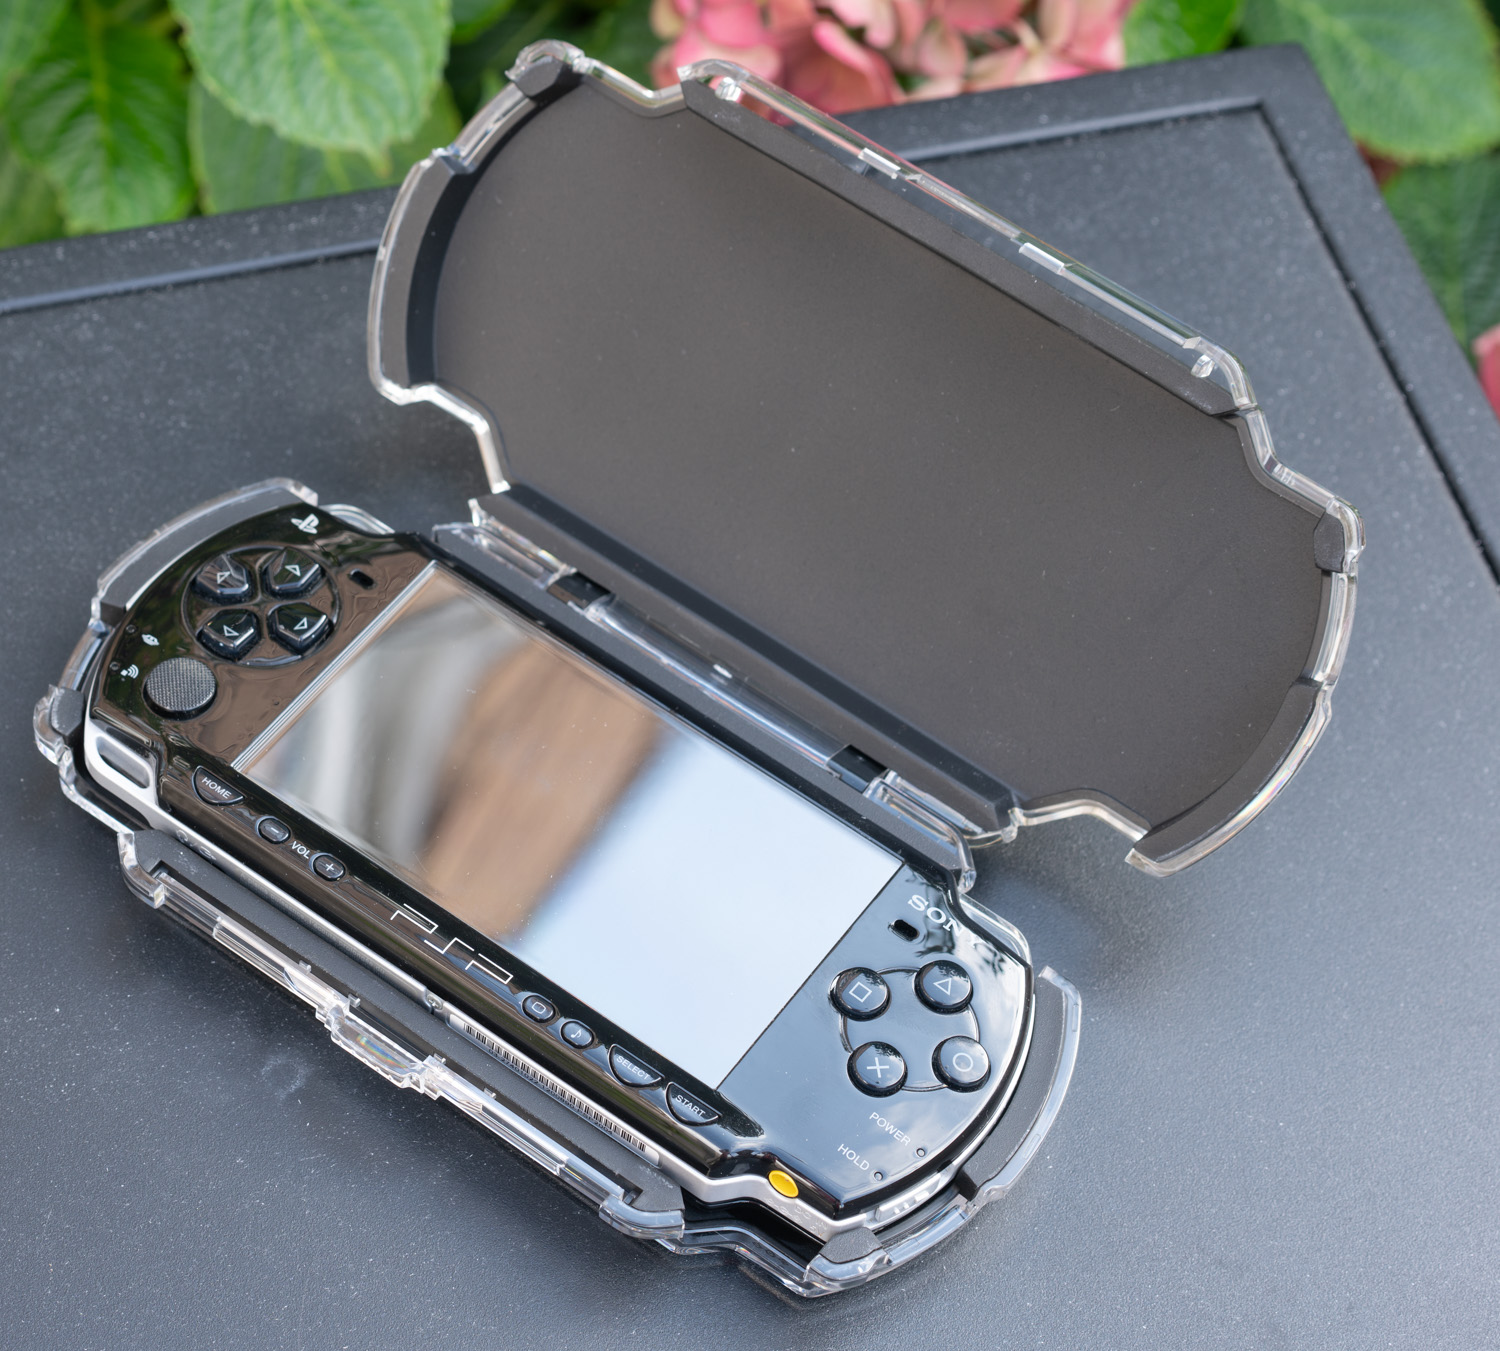 Sony Playstation Portable, радость коллекционера - 8